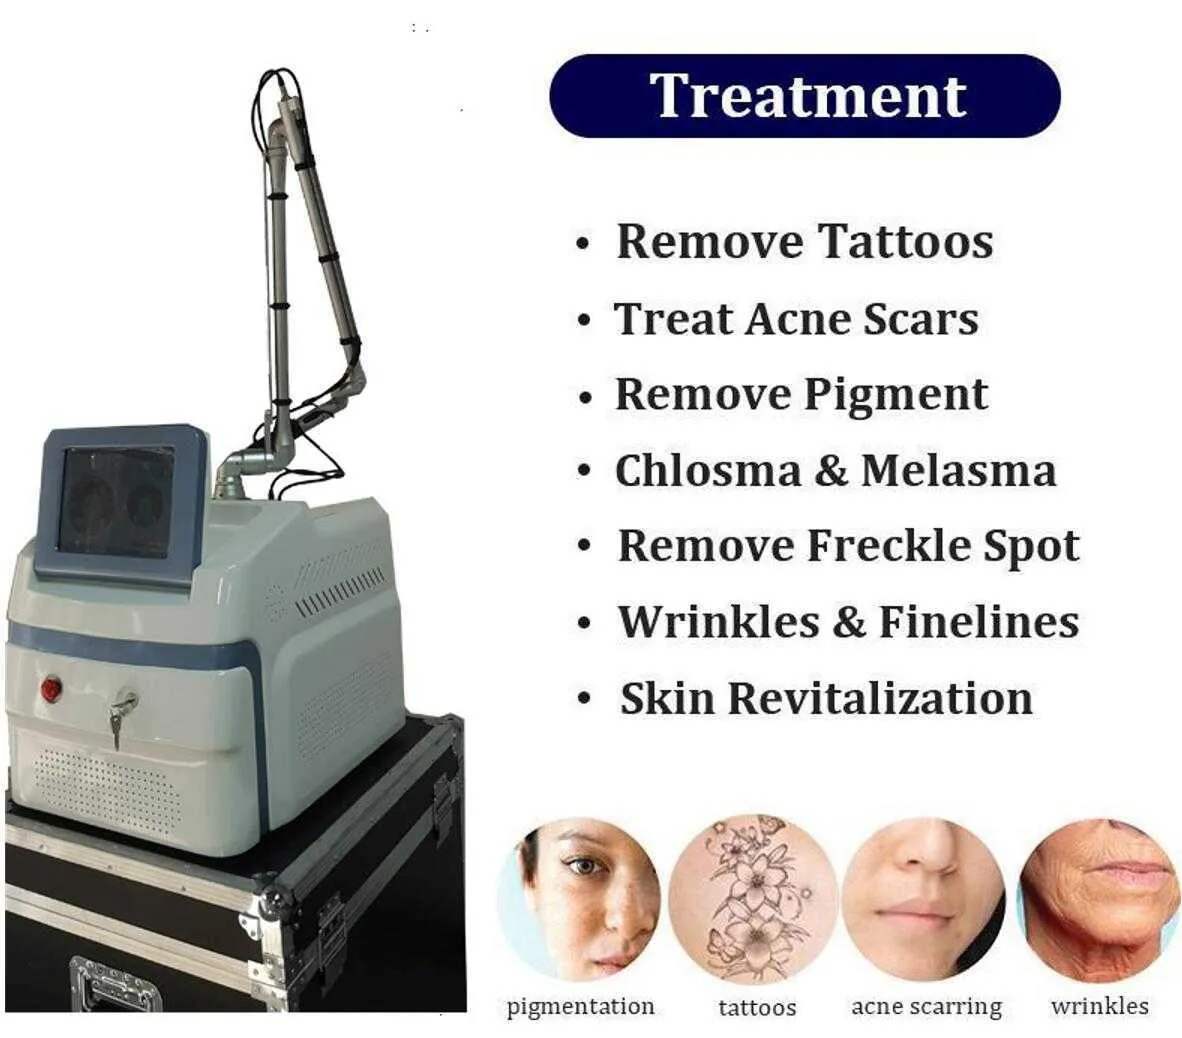 Professional Pico sure Laser Machine laser medici professionali Acne Spot pigmentazione tatuaggi rimozione 755 532 1064nm Cynisure Lazer